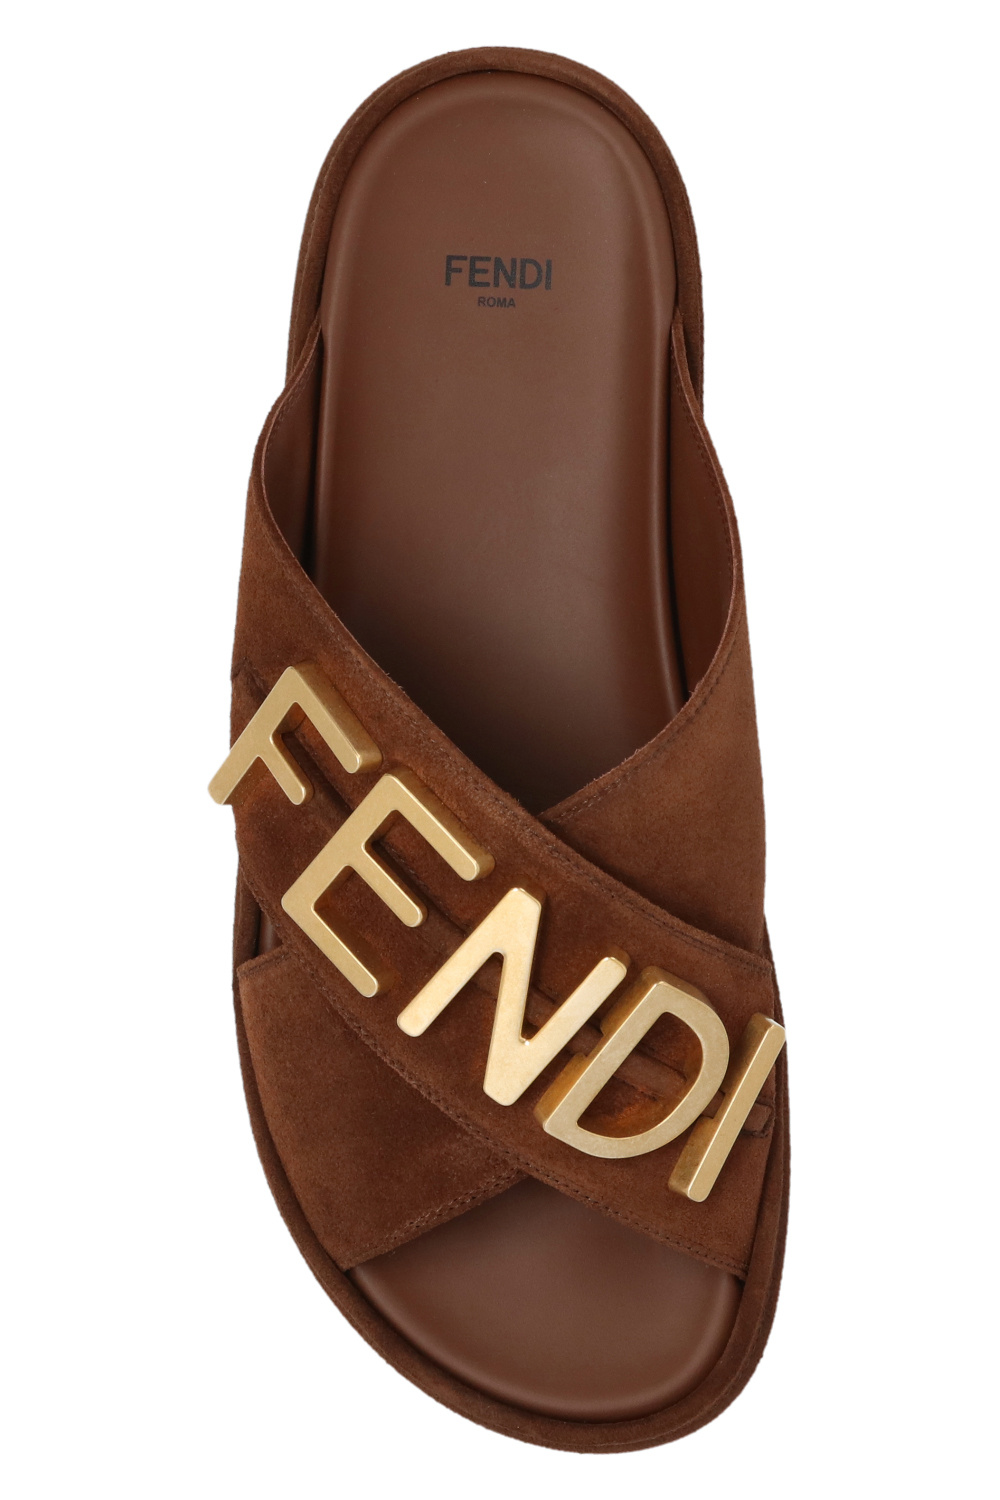 Fendi ‘Fendigraphy’ wallet slides